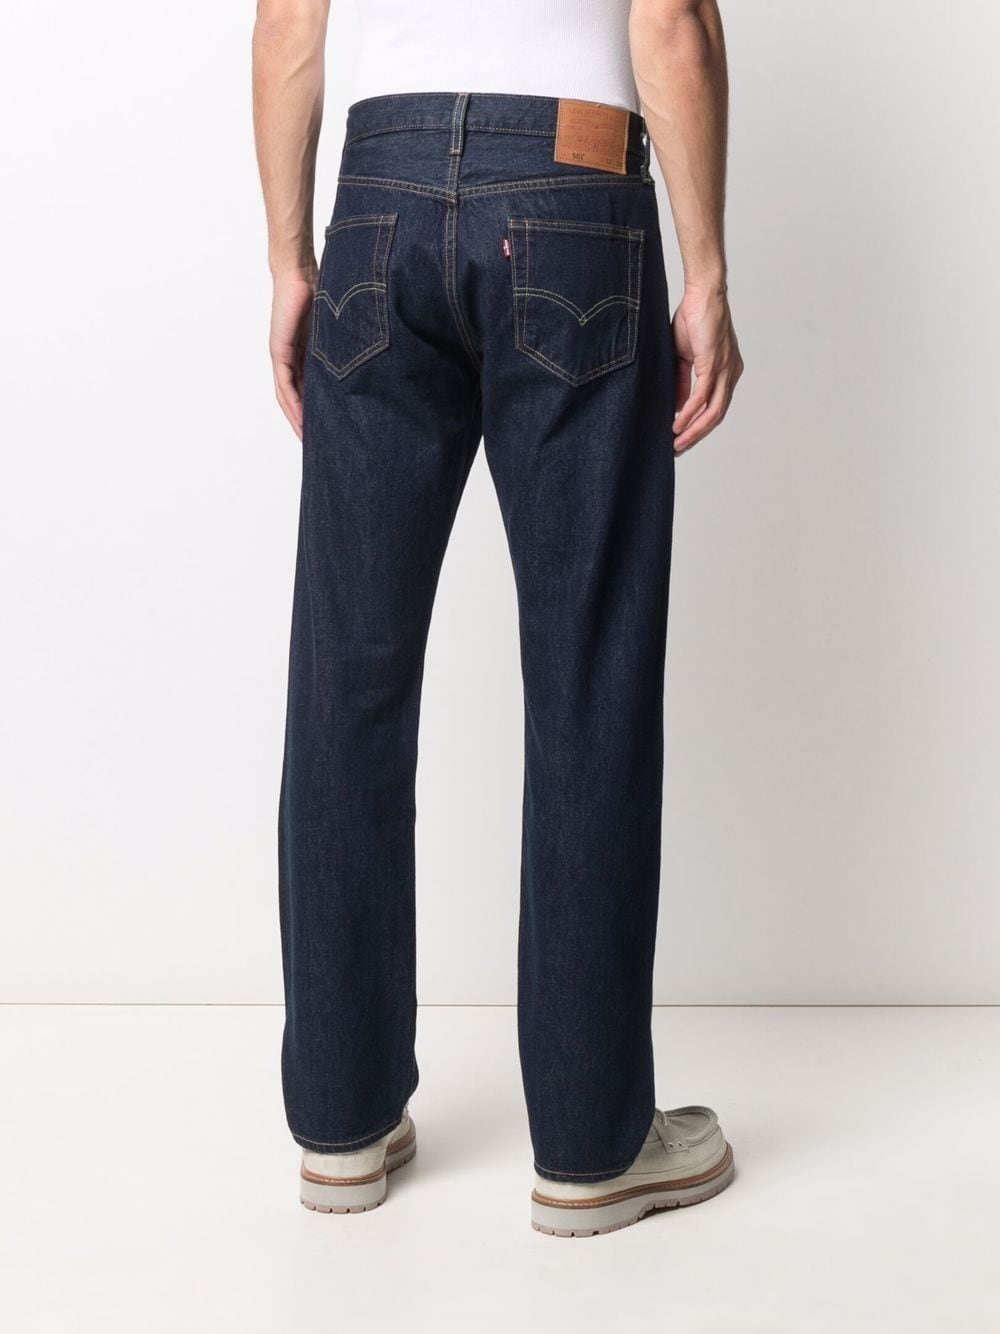 Levi's 501 button-fly jeans | Smart Closet